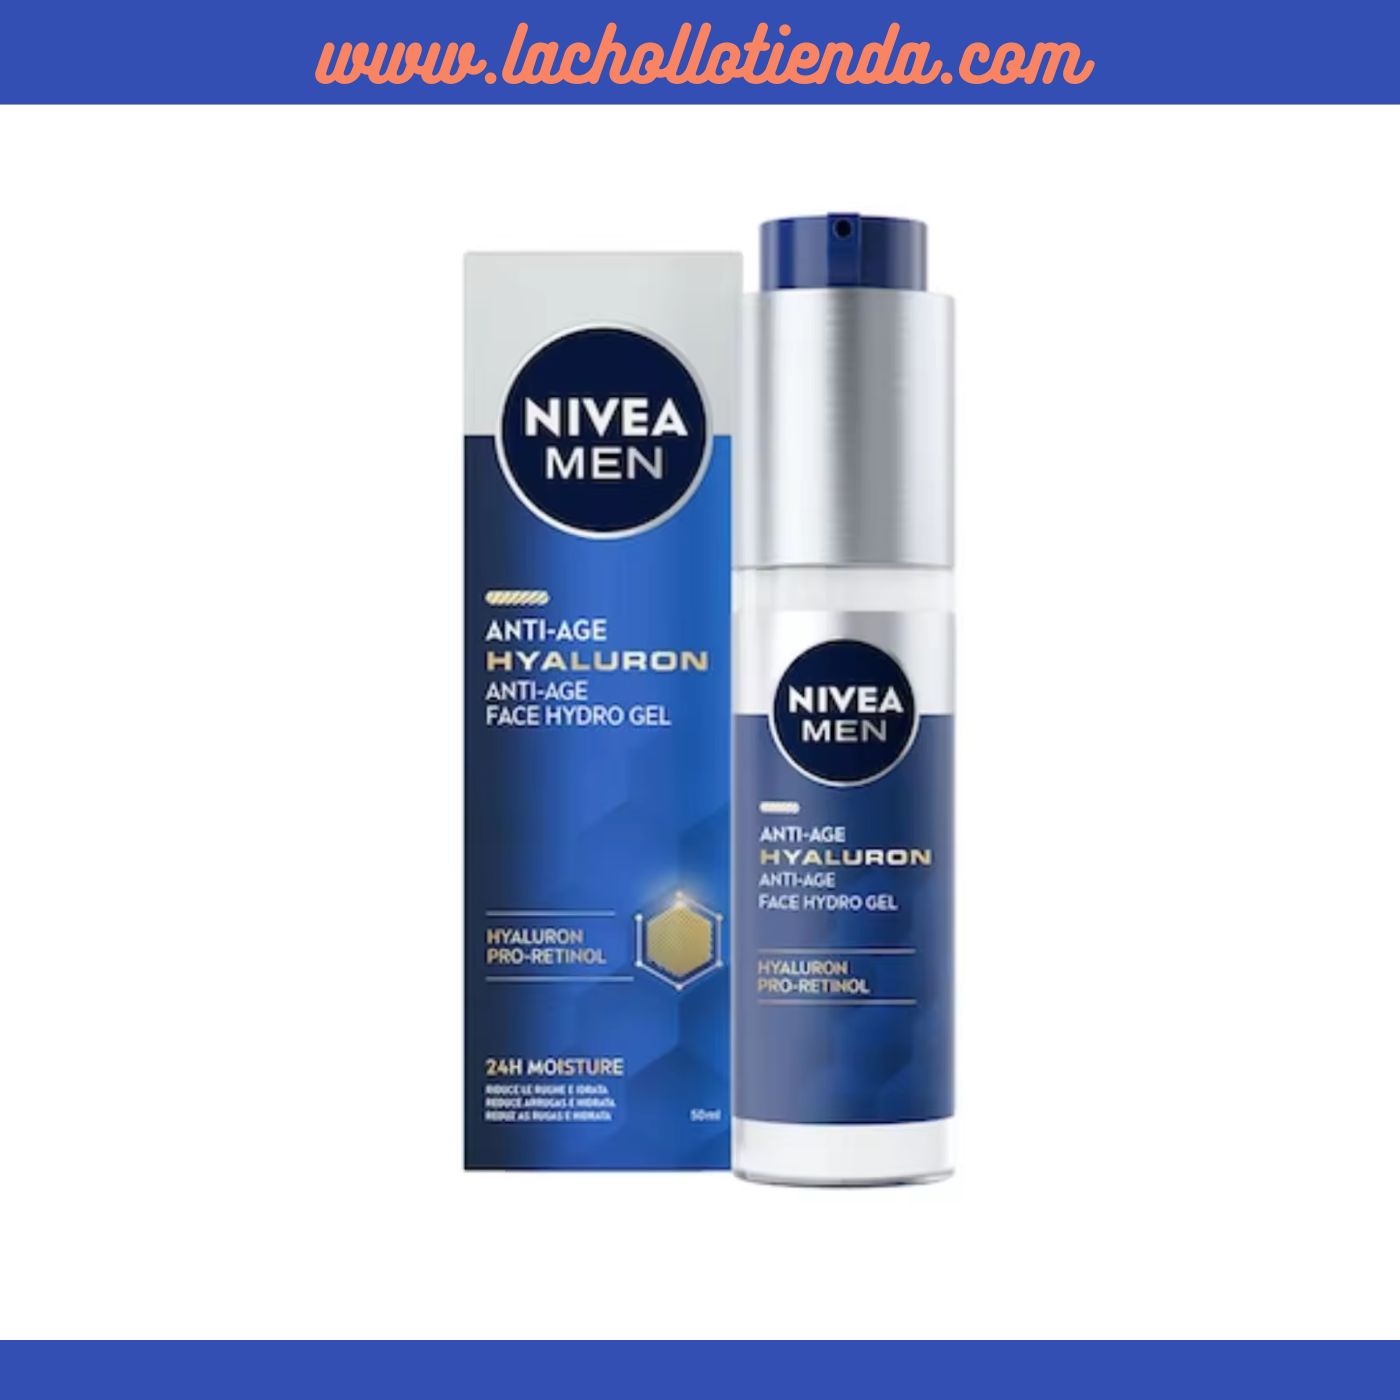 Nivea Men - Hyaluron Pro-Retinol - Crema Gel Facial, Antiedad con Ácido Hialurónico y Retinol 50ml